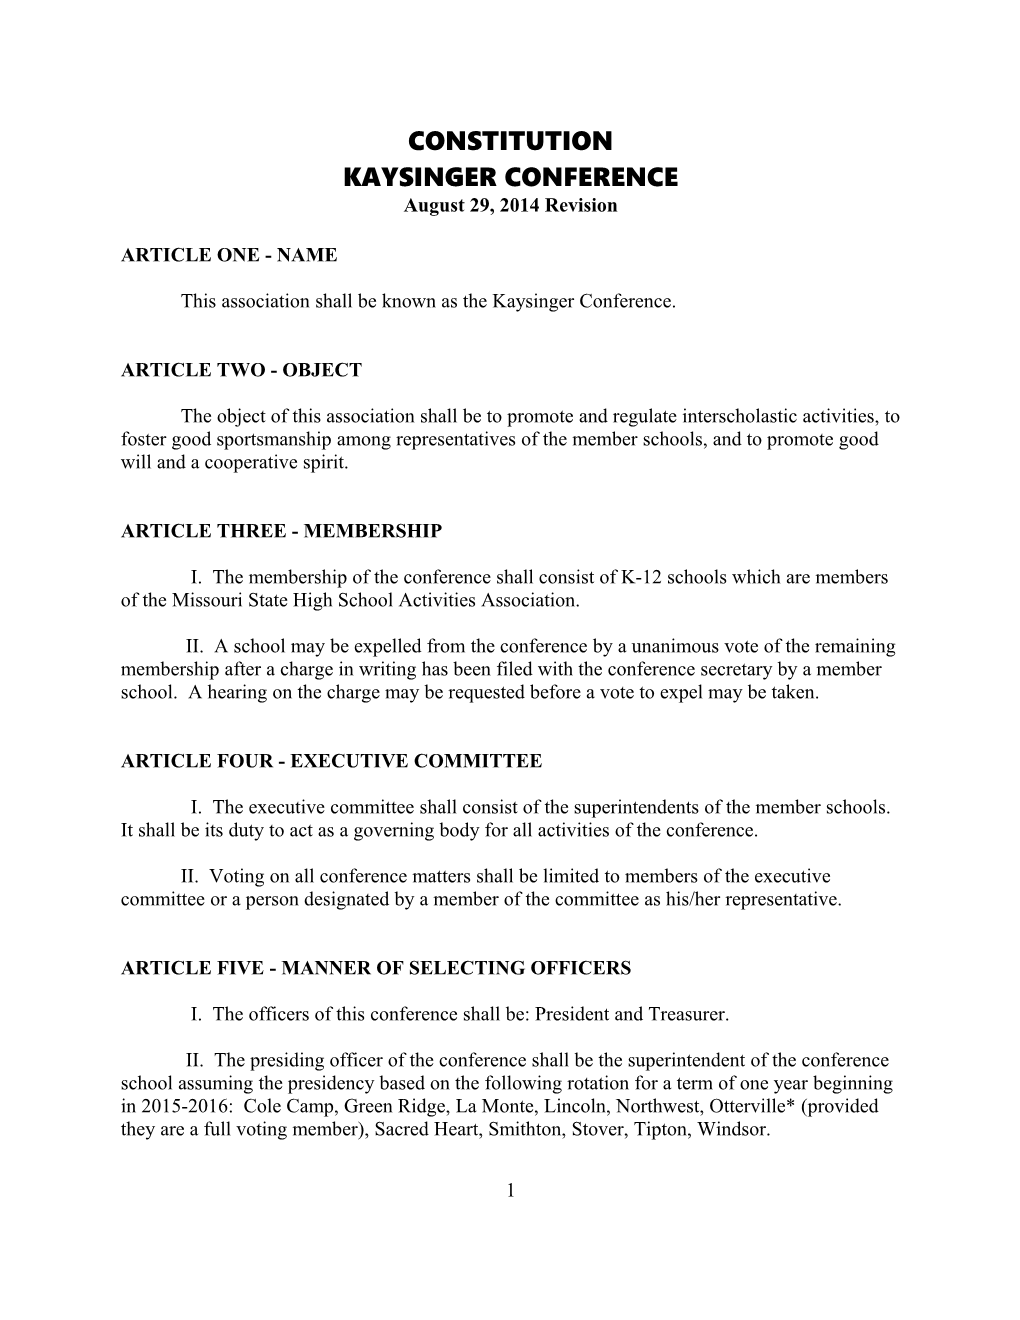 Kaysinger Conference